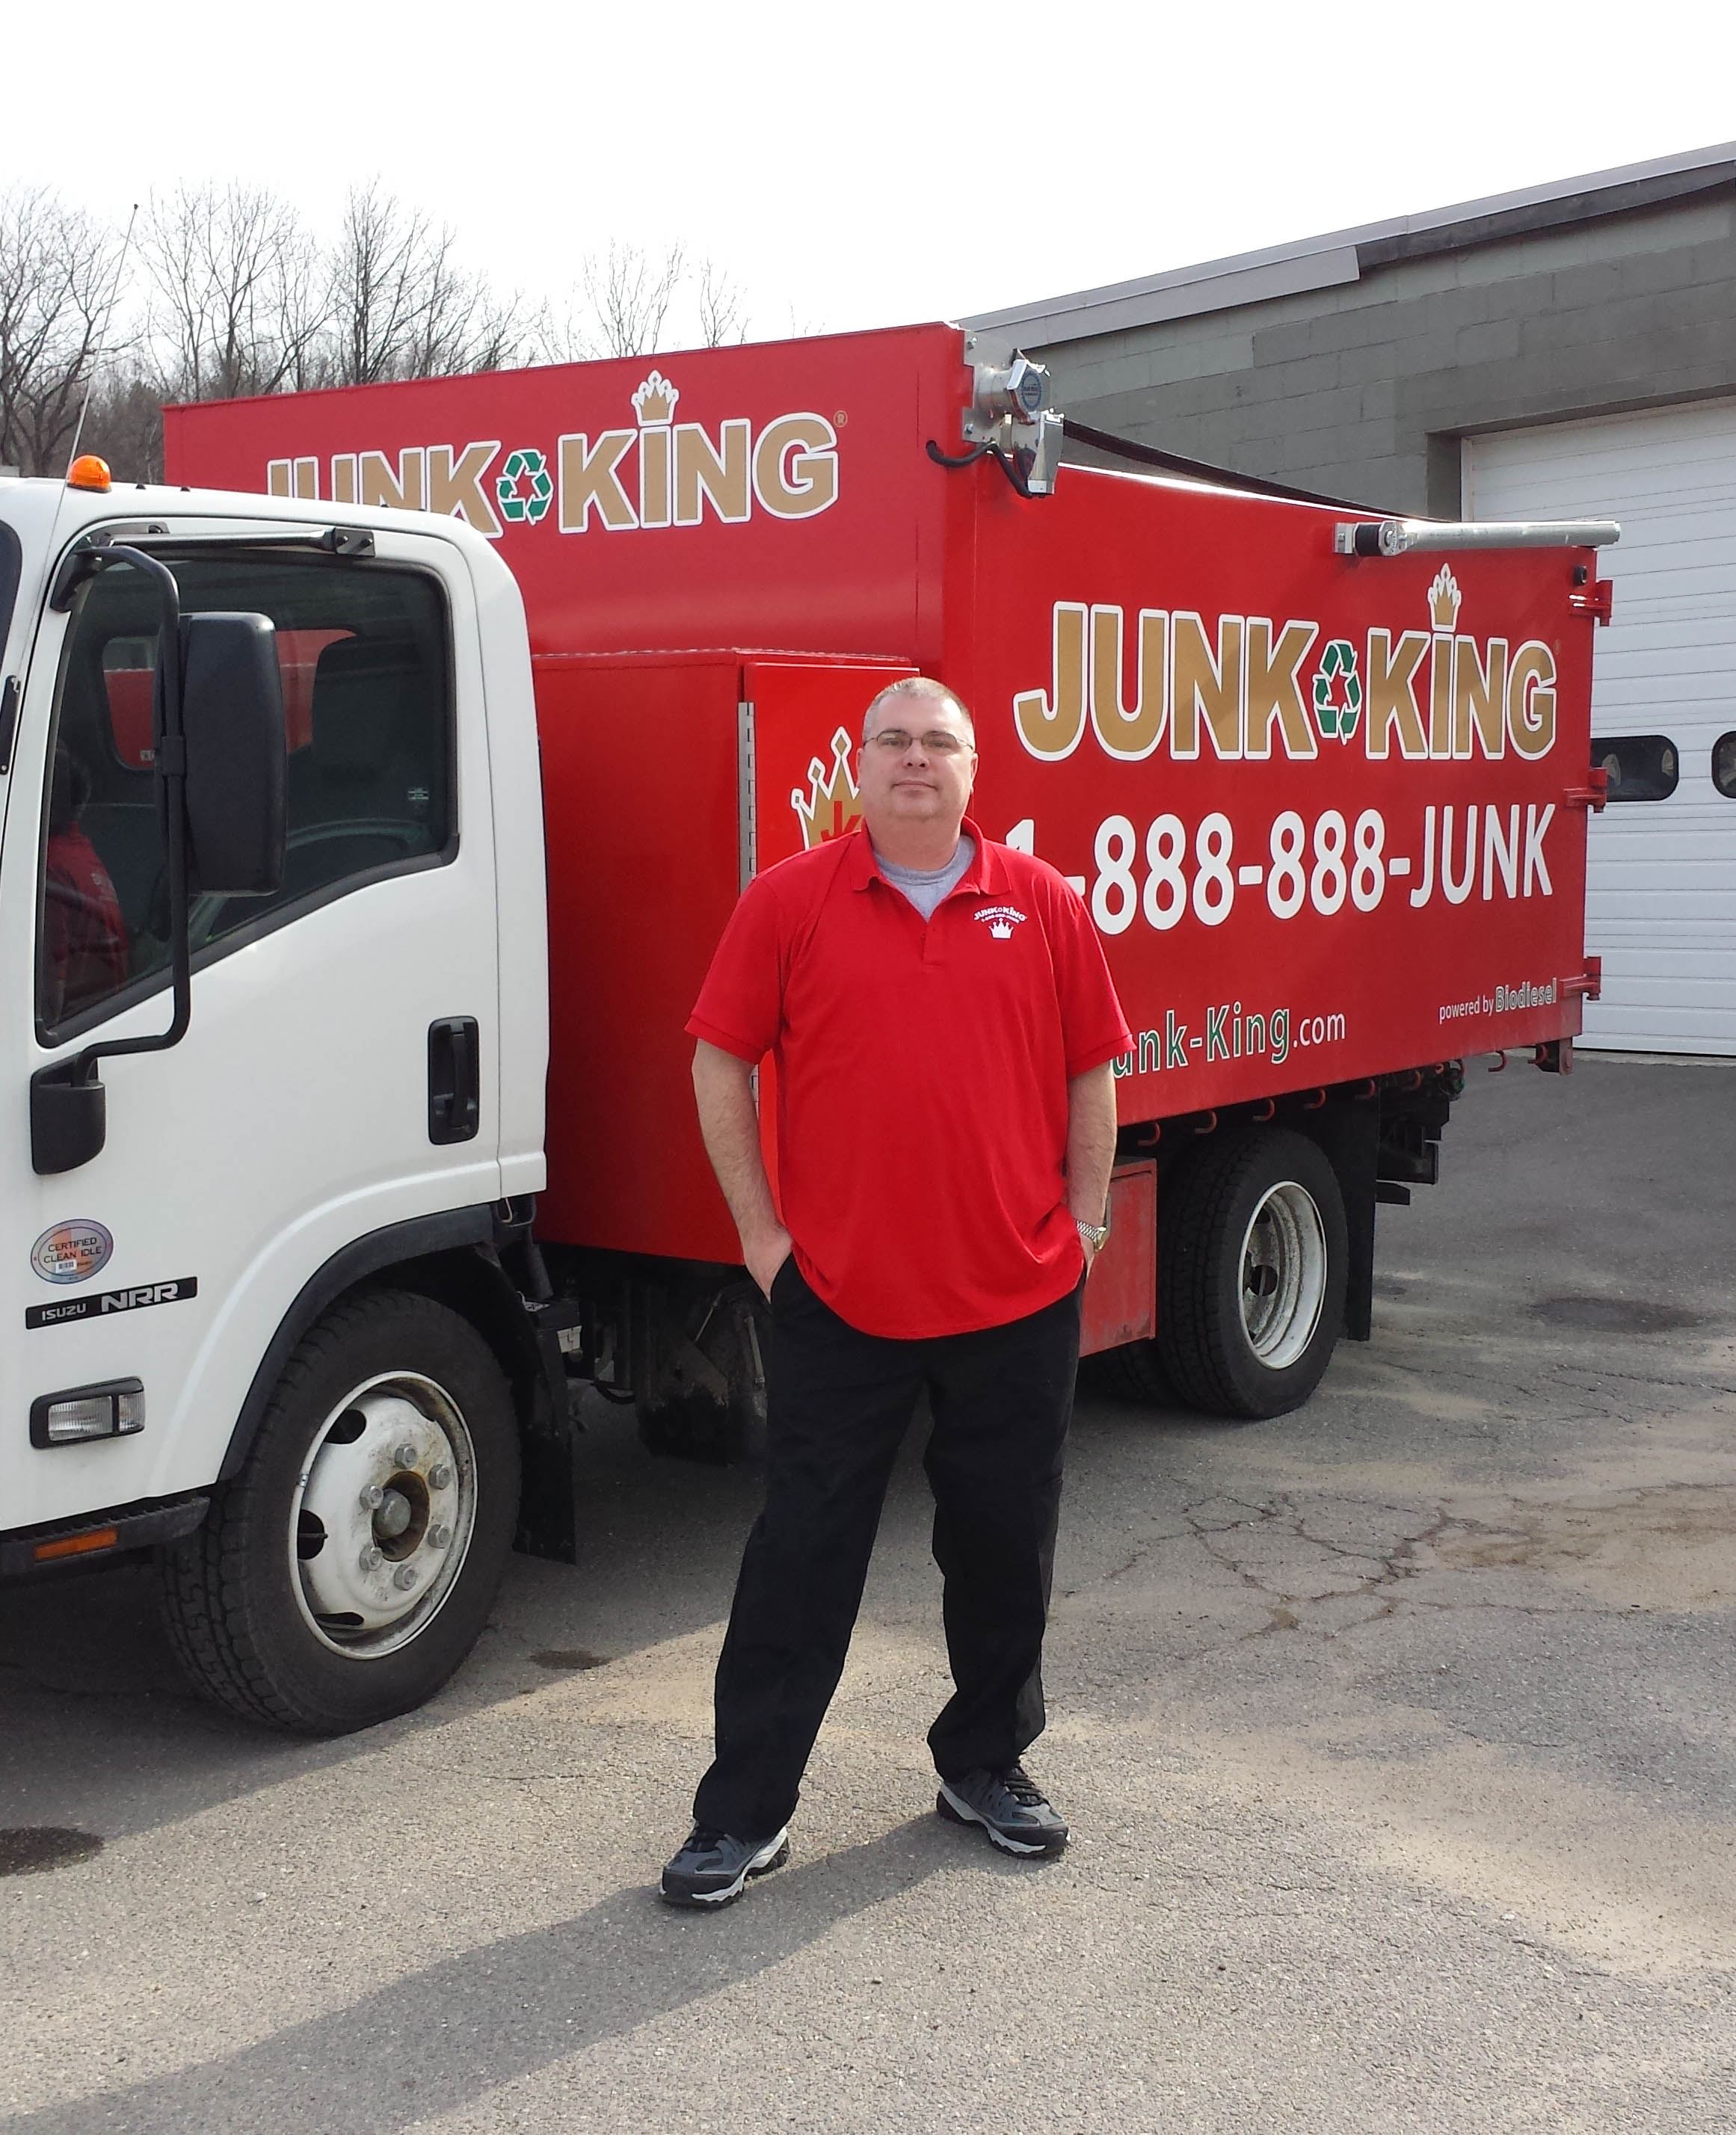 Junk King Franchise Owner, Tom Indge.